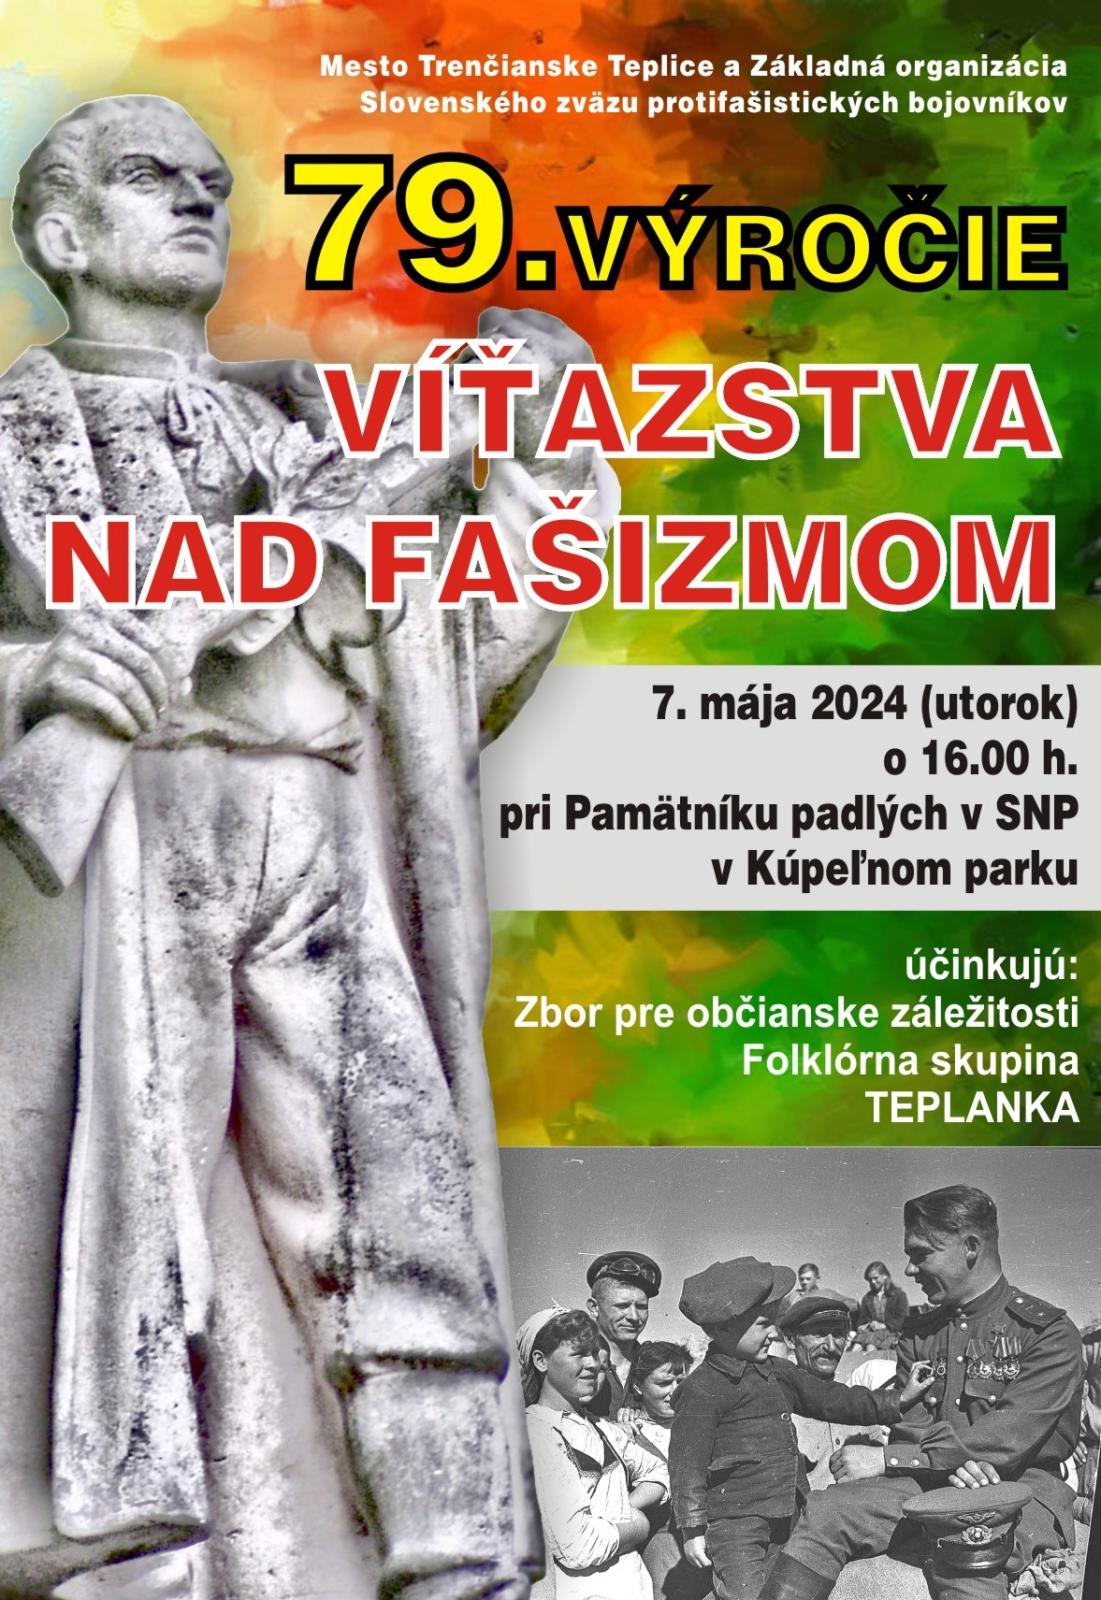 Oslavy 79. vroia vazstva nad faizmom 2024 Trenianske Teplice